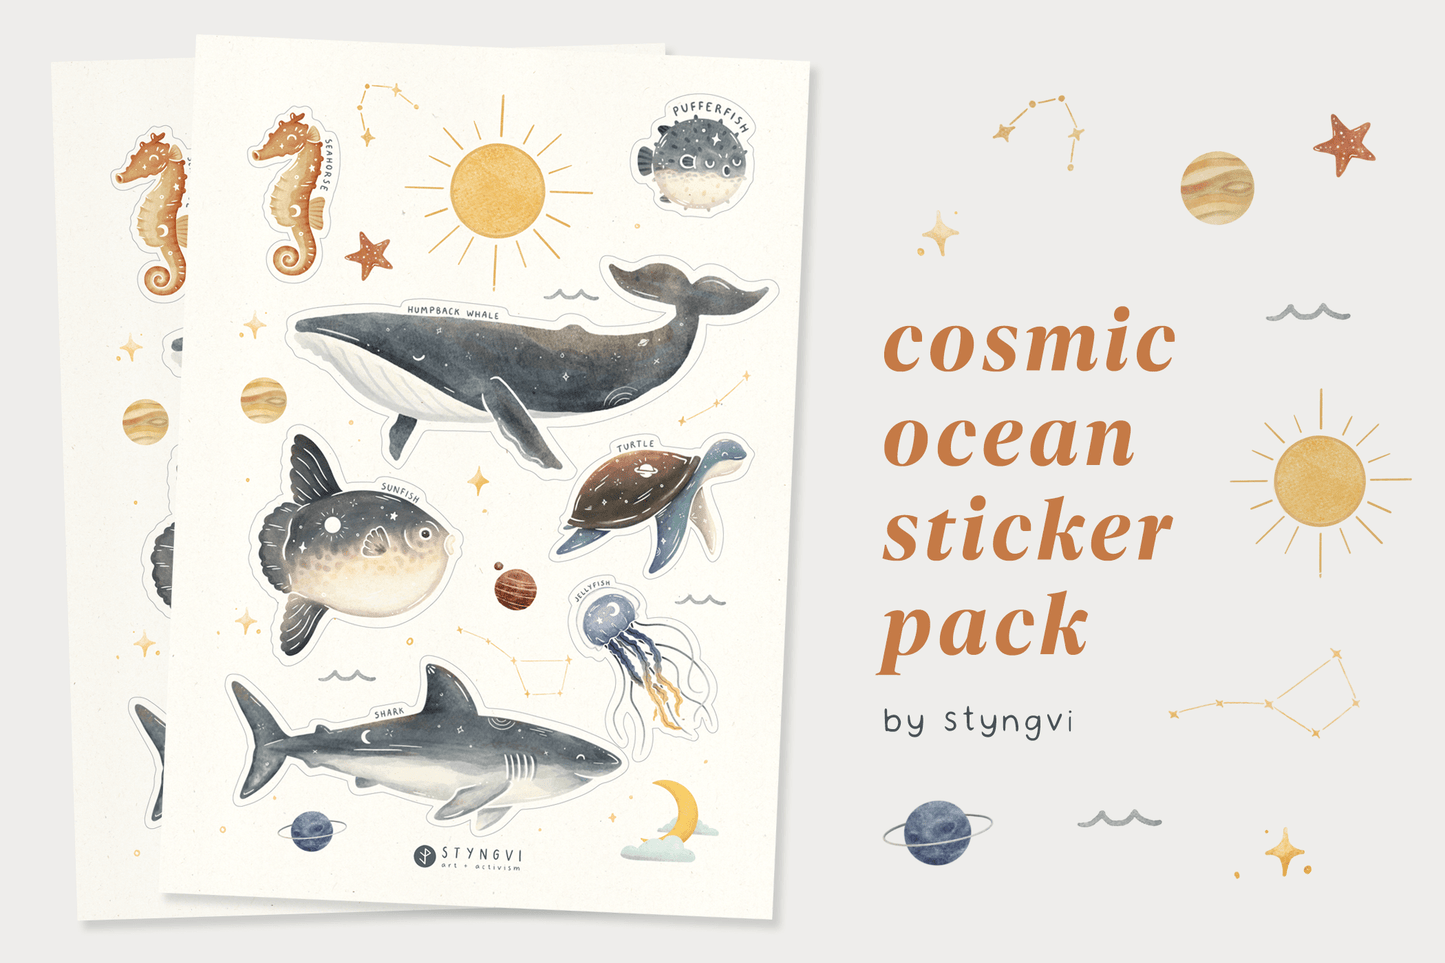 Styngvi Cosmic Ocean Sticker Pack - A5 sheet